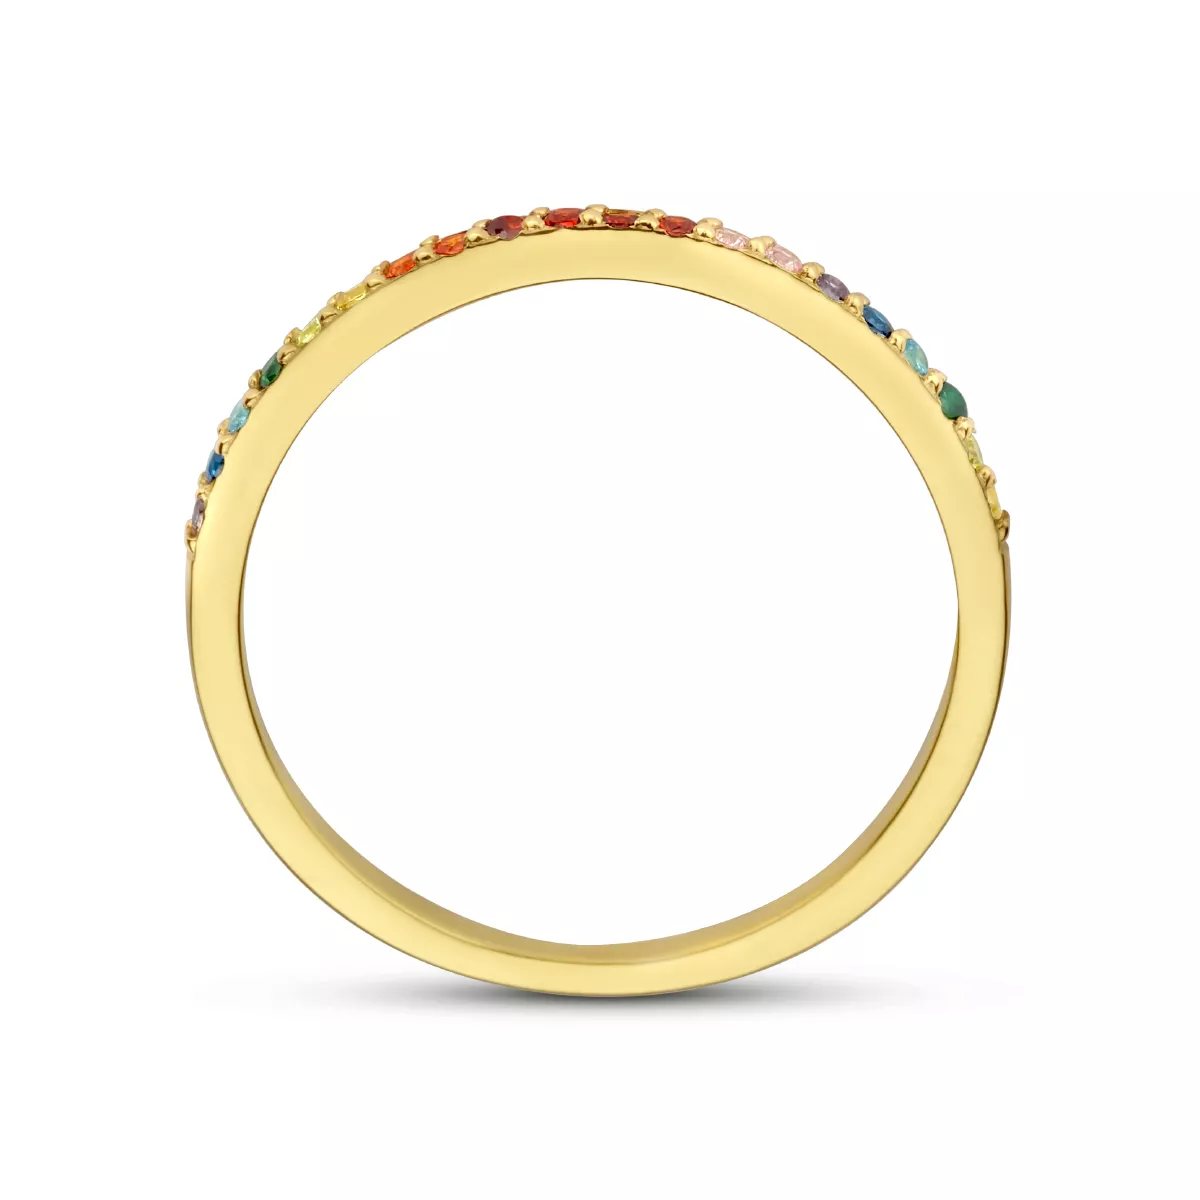 Ring Fantasie zilver-zirconia goudkleurig-meerkleurig 1,5 mm